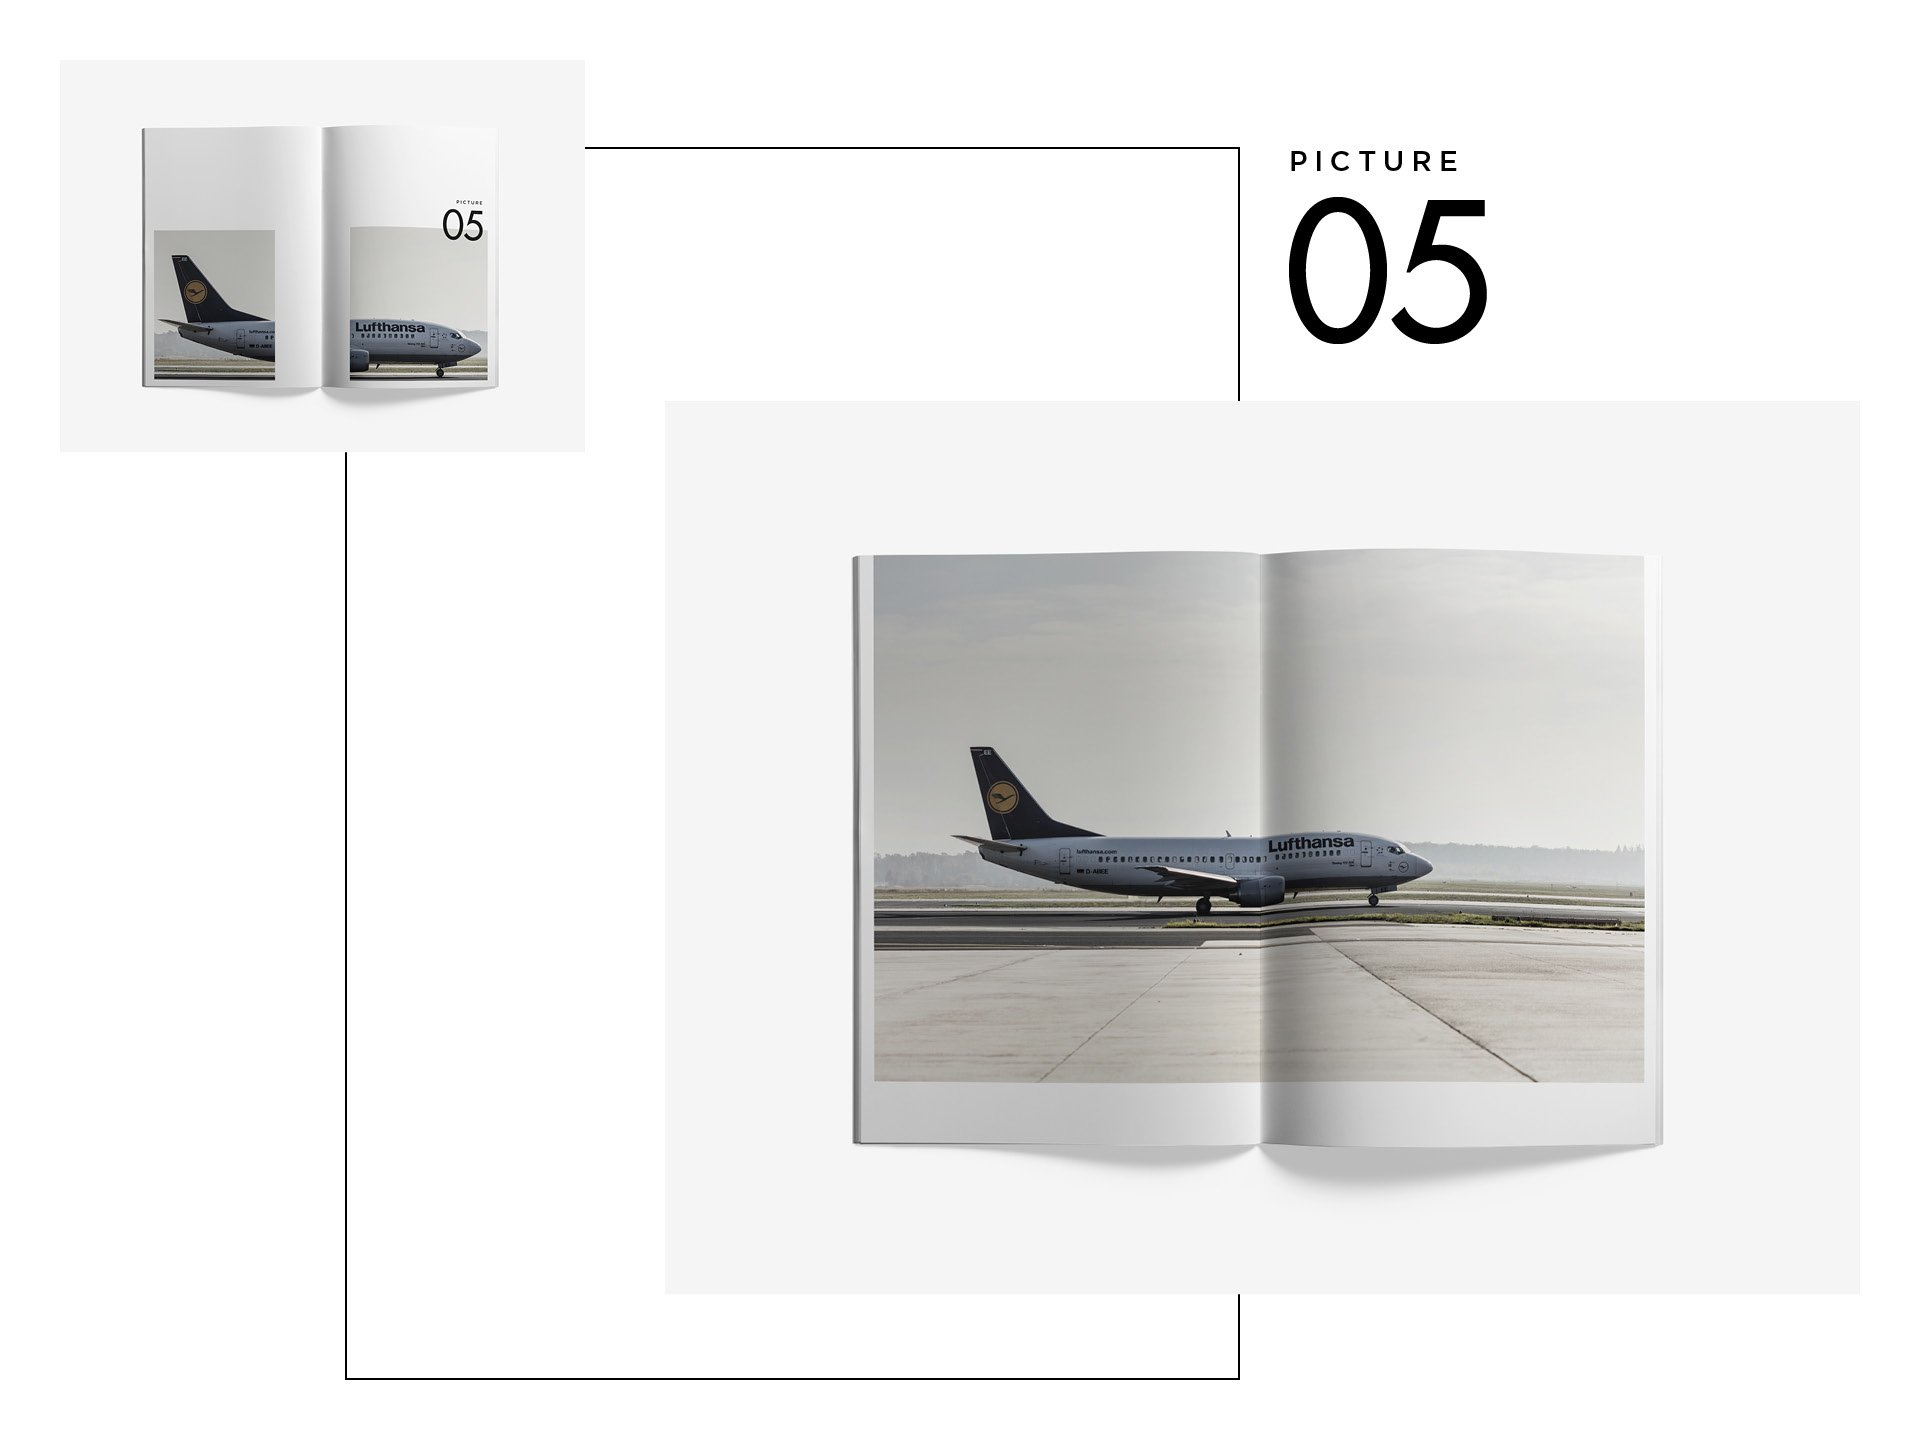 Bureau-Mitte-Editorial-Design-Lufthansa-Boeing-737-2.jpg